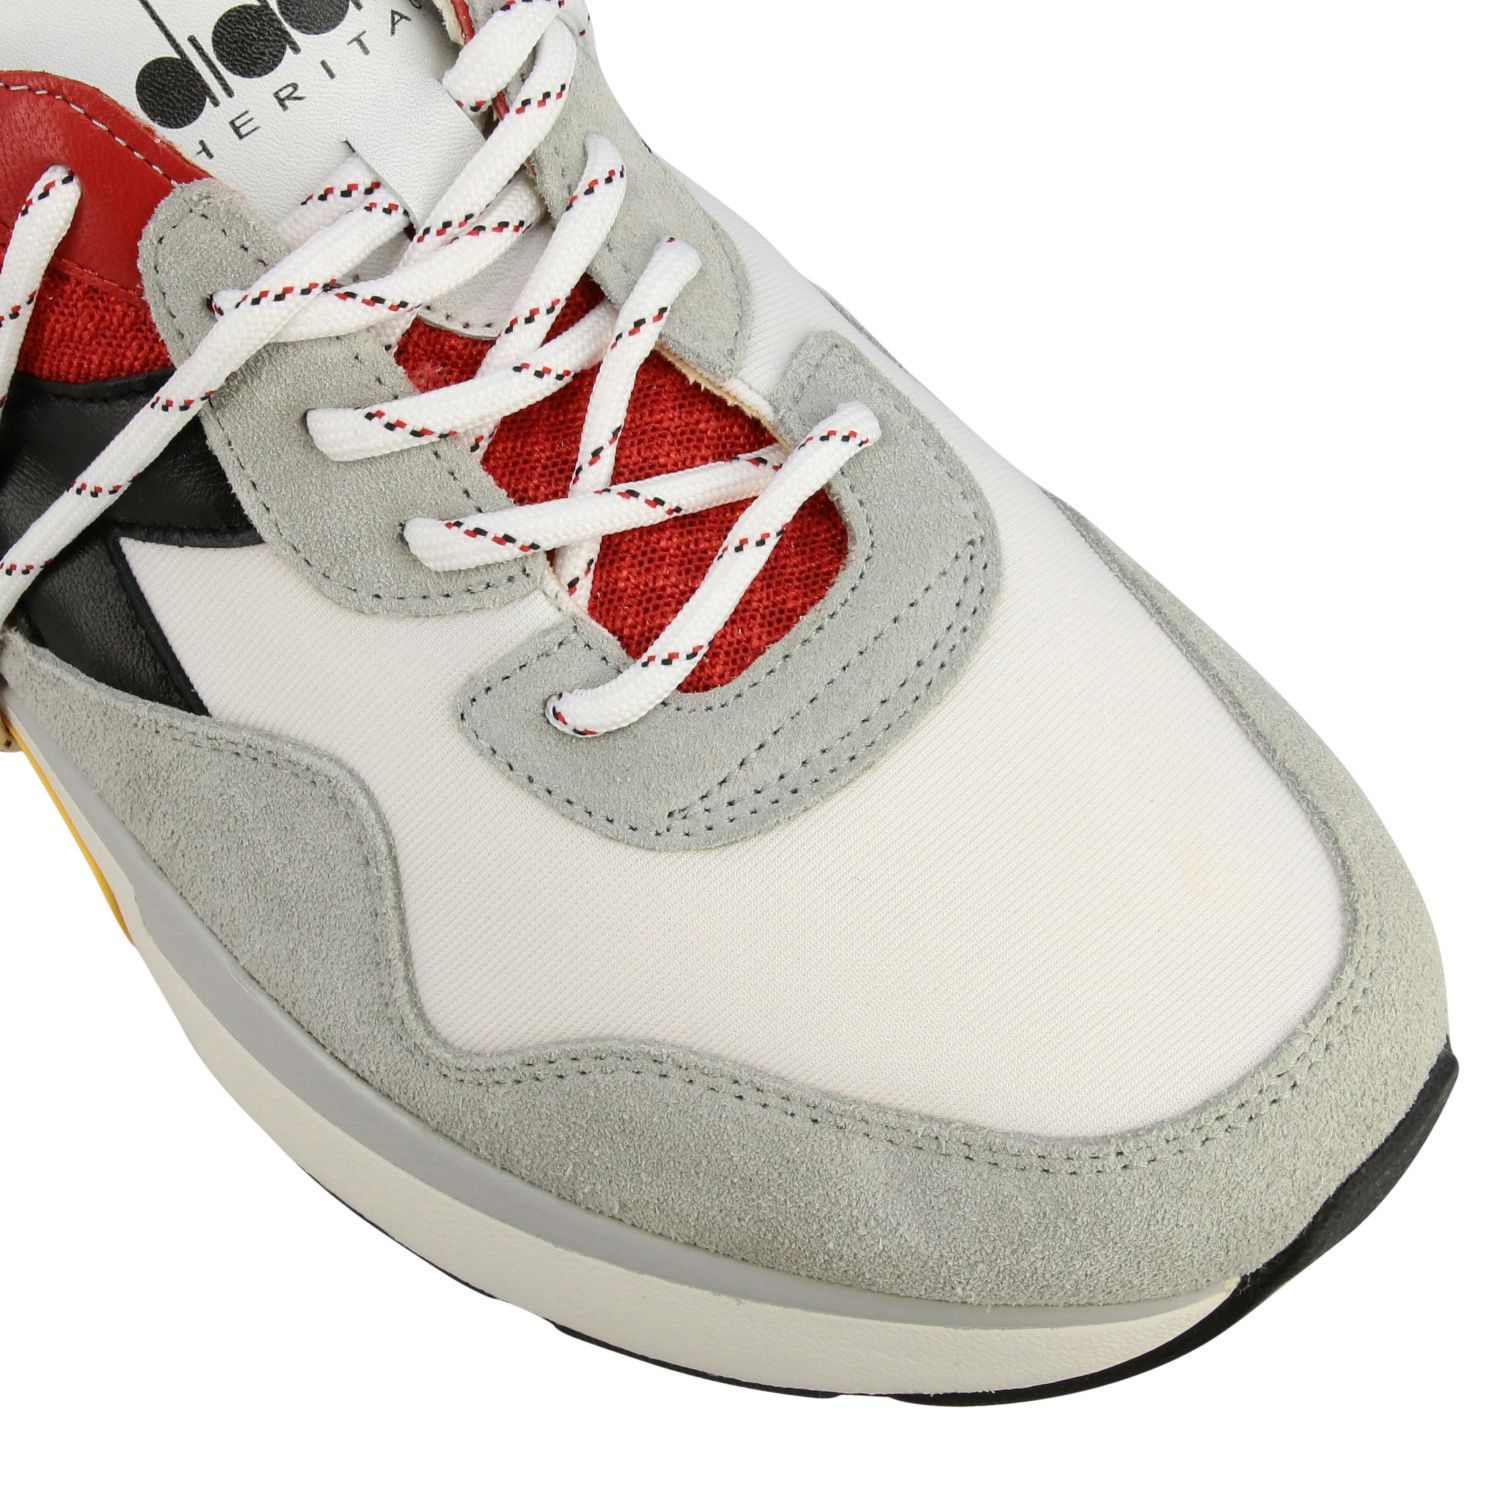 Diadora Heritage Outlet: sneakers for man - White | Diadora Heritage ...